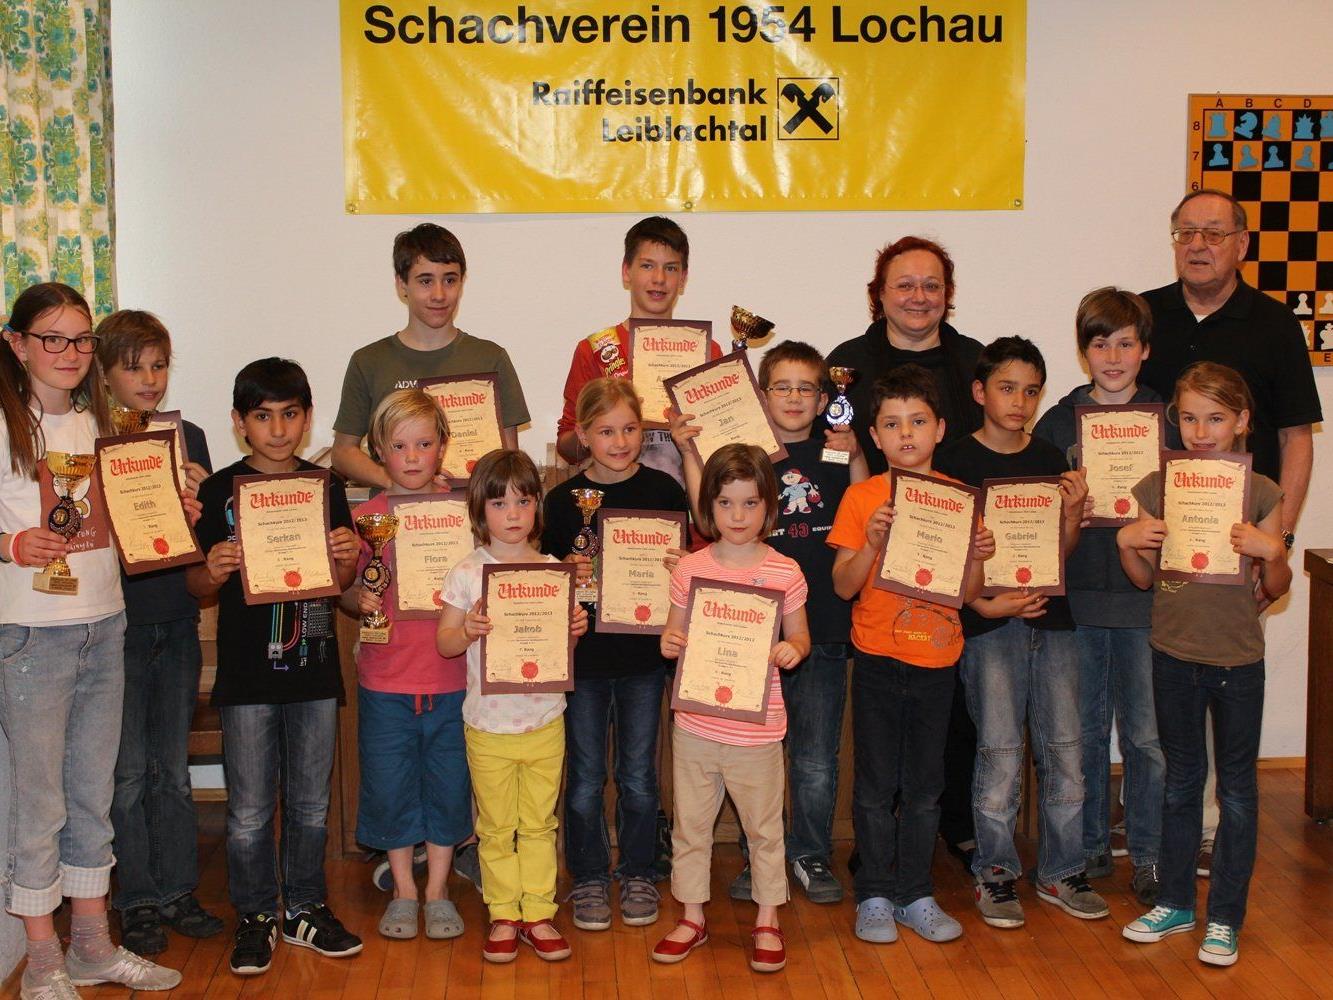 Der erfolgreiche Lochauer Schachnachwuchs mit Urkunden und Pokalen beim Siegerfoto nach dem großen Abschlussturnier.